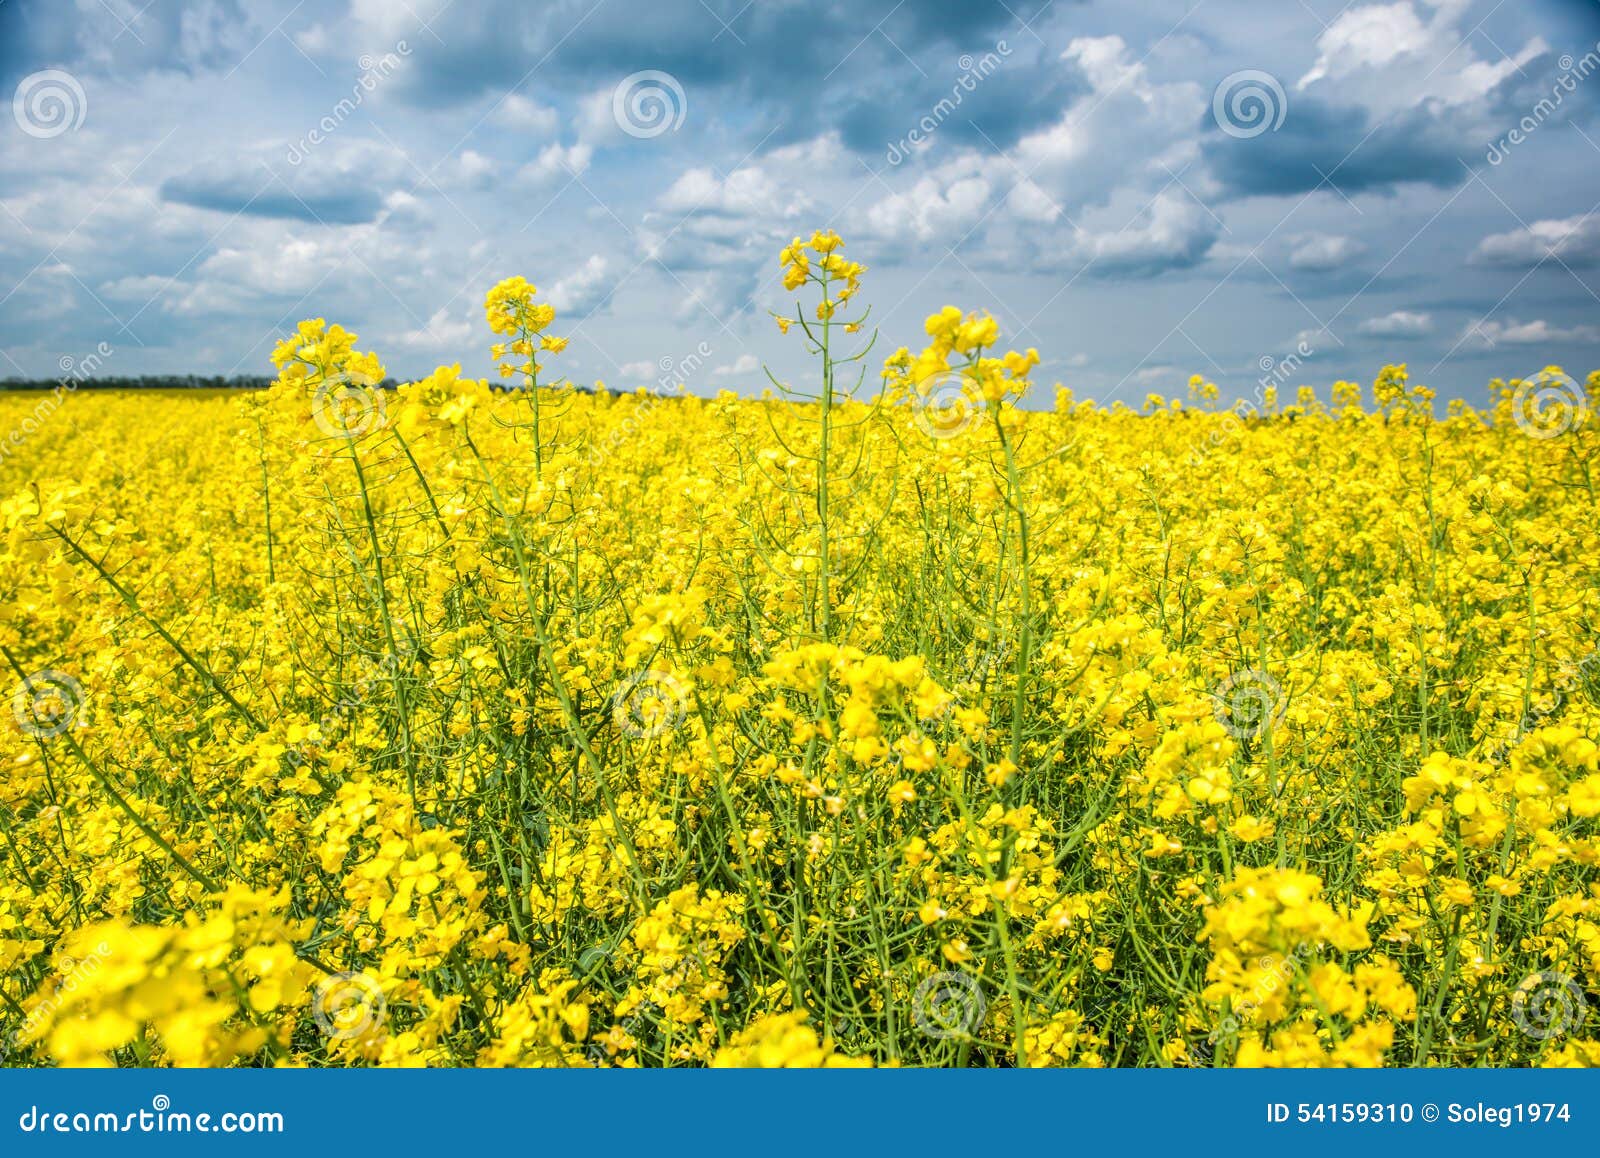 Paysage De Champ D'été, Fleur Jaune De Graine De Colza Photo stock - Image  du campagne, herbe: 54159310